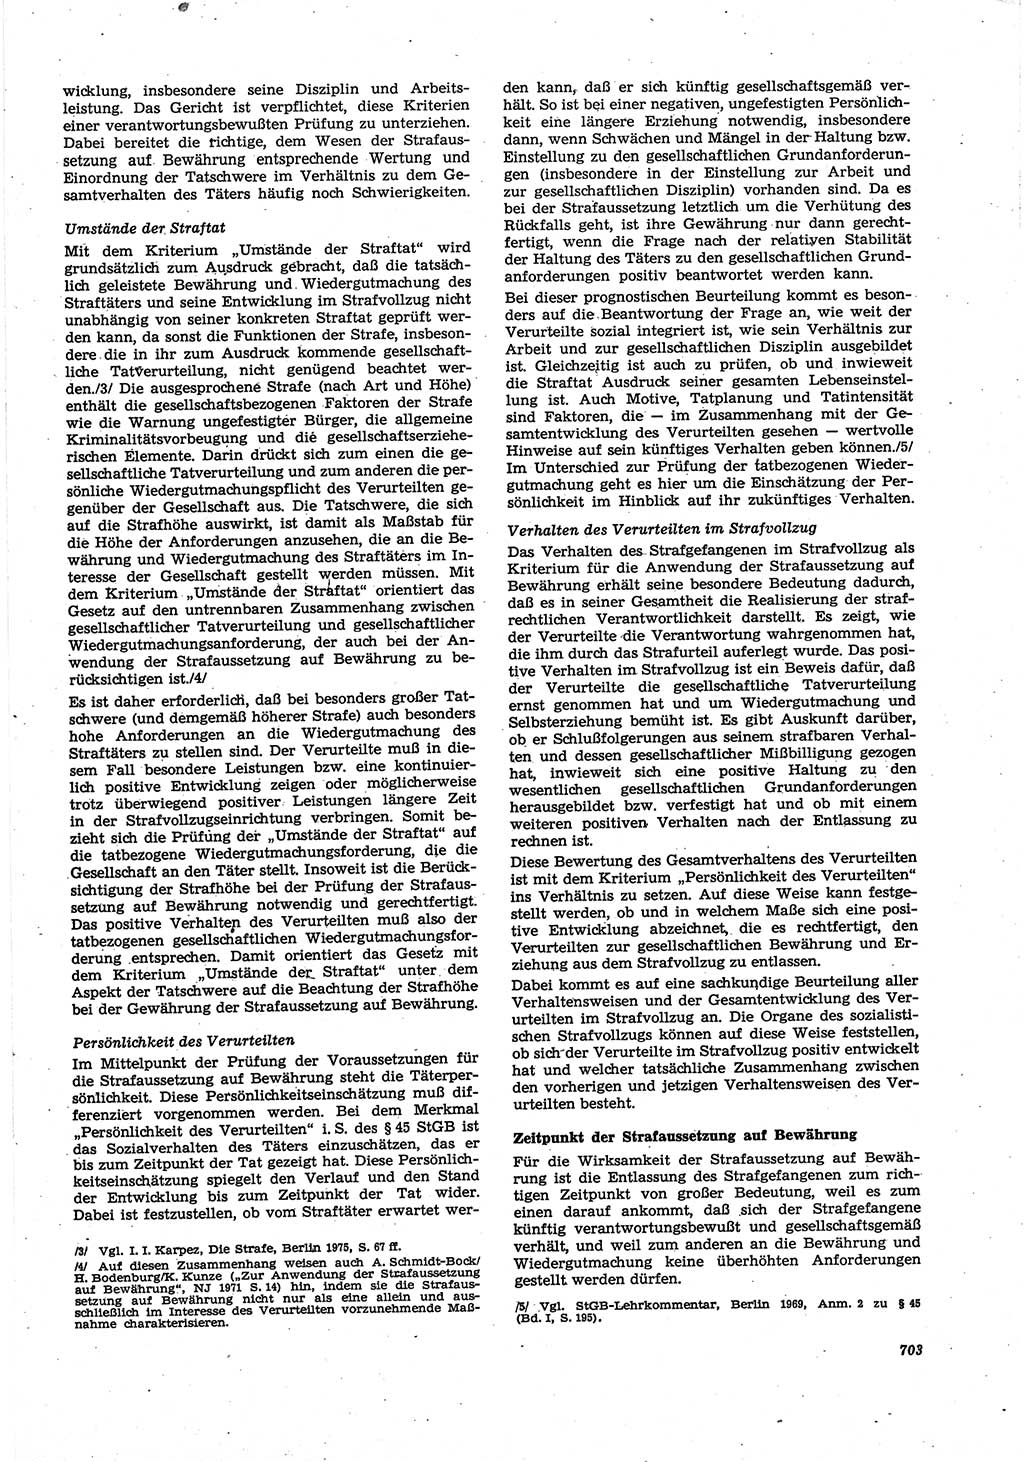 Neue Justiz (NJ), Zeitschrift für Recht und Rechtswissenschaft [Deutsche Demokratische Republik (DDR)], 30. Jahrgang 1976, Seite 703 (NJ DDR 1976, S. 703)